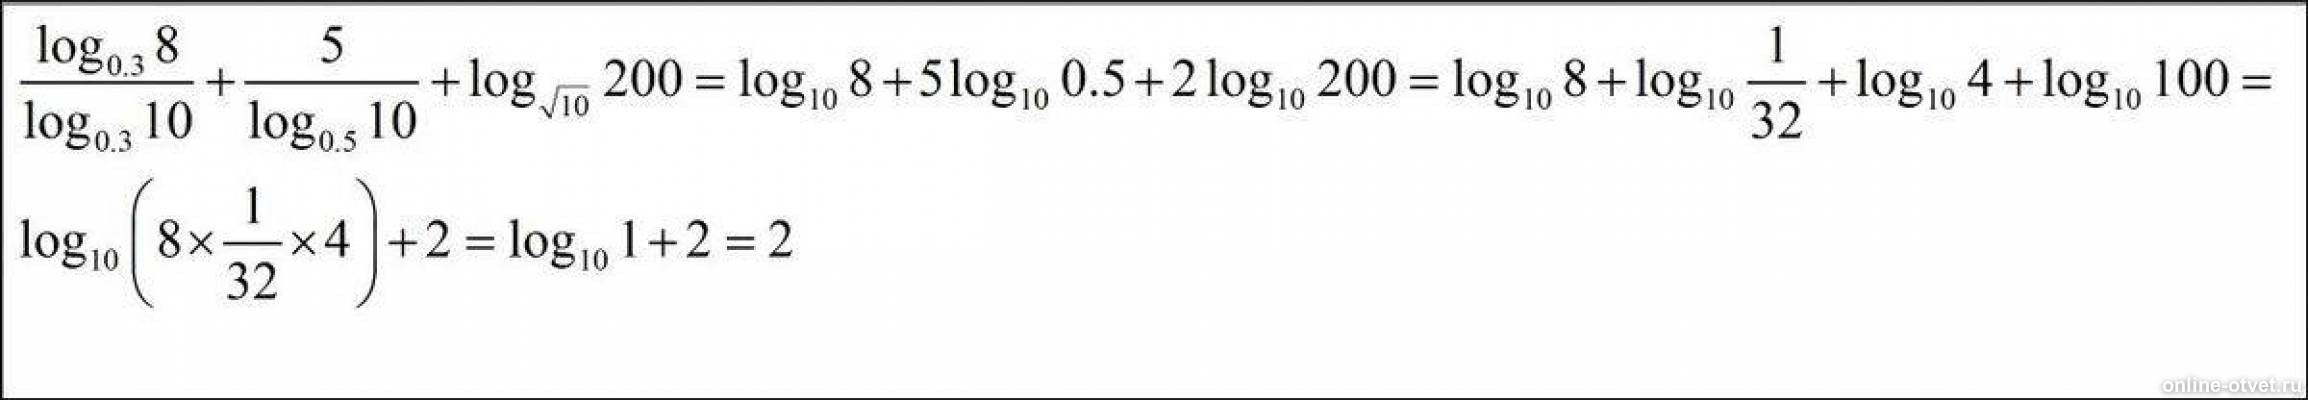 Log5 корень 5. Лог0,3 10. Log 0 3 10 log - log 0,3 3. Log0.3 8/log0.3 10. 2 Log10 200 2 log10 2.